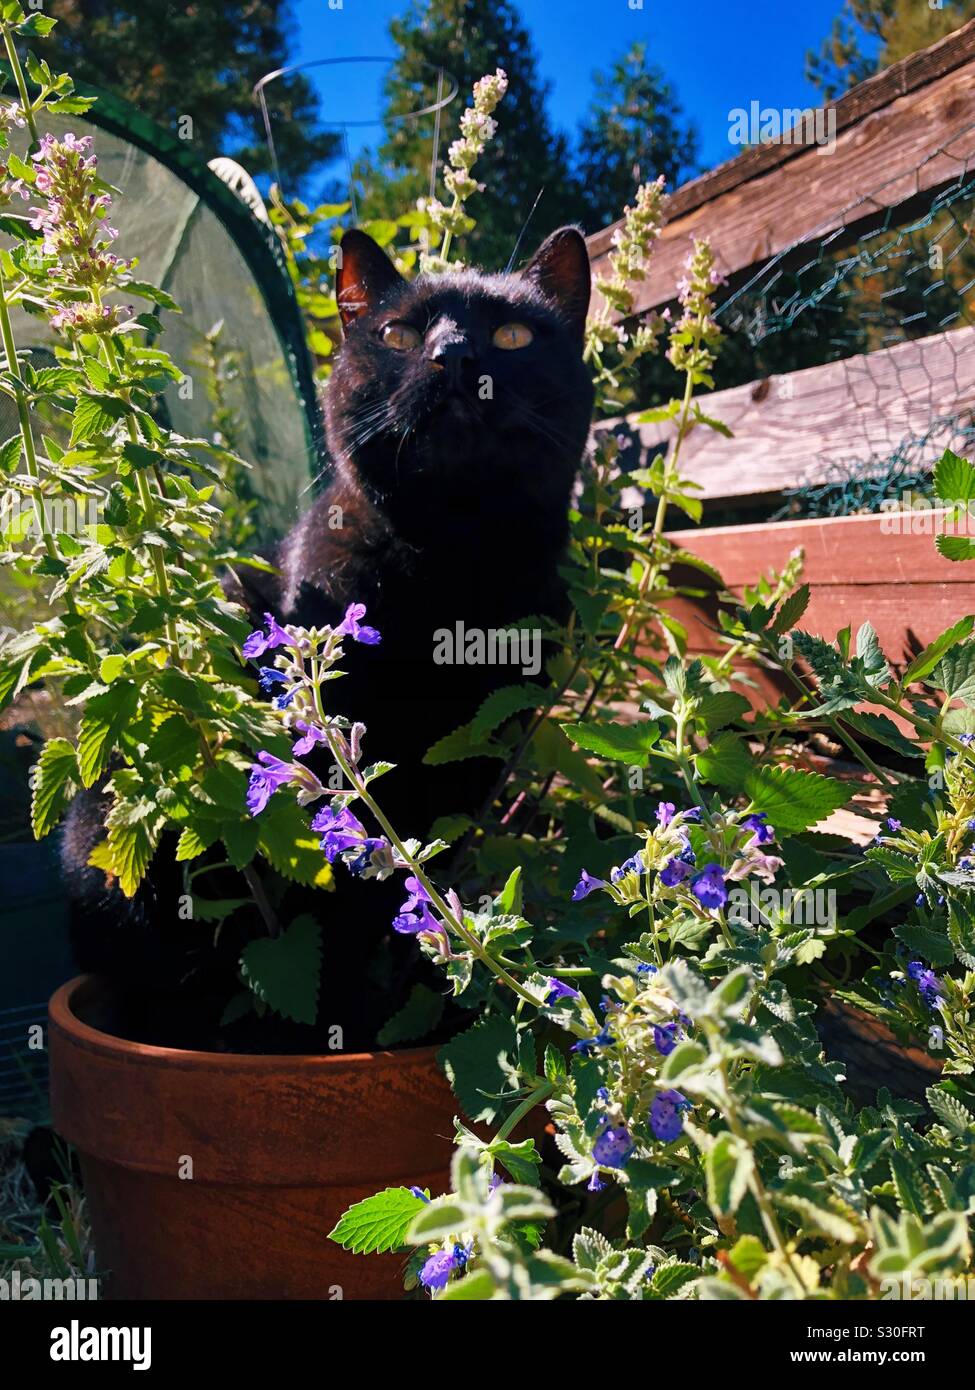 Black cat in a pot of cat nip Stock Photo